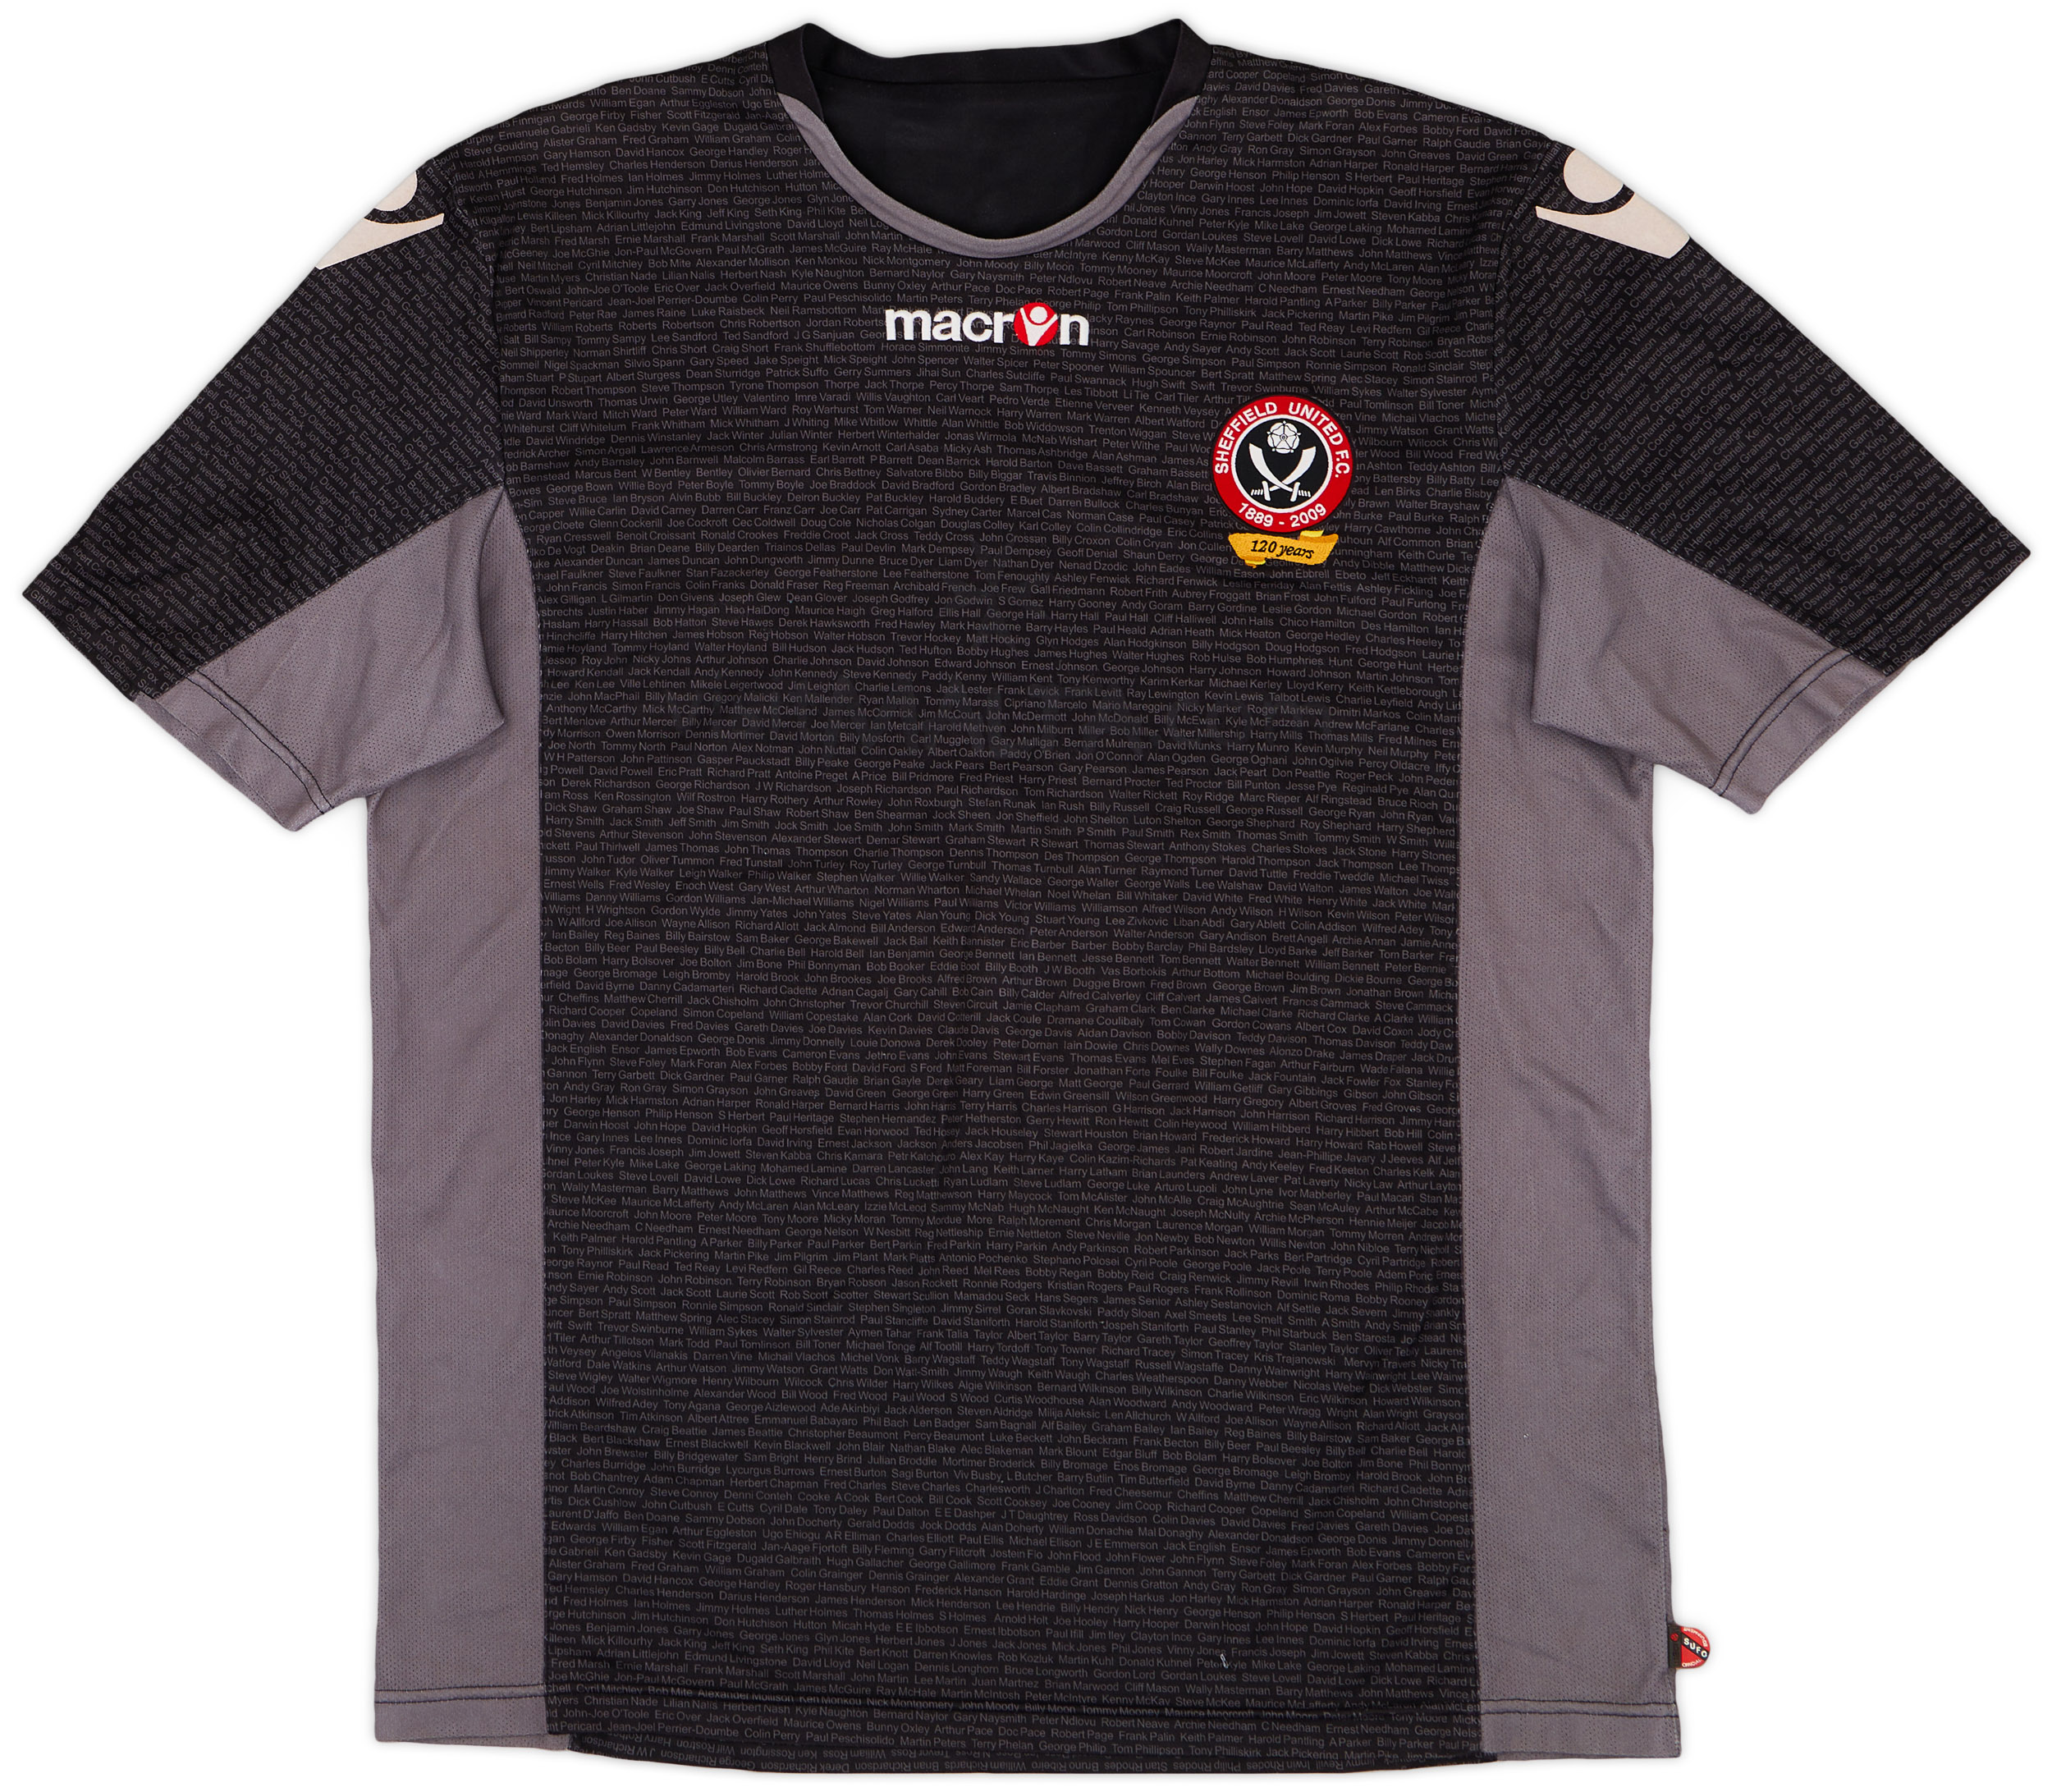 2009-10 Sheffield United '120 Years' Anniversary Shirt - 7/10 - ()